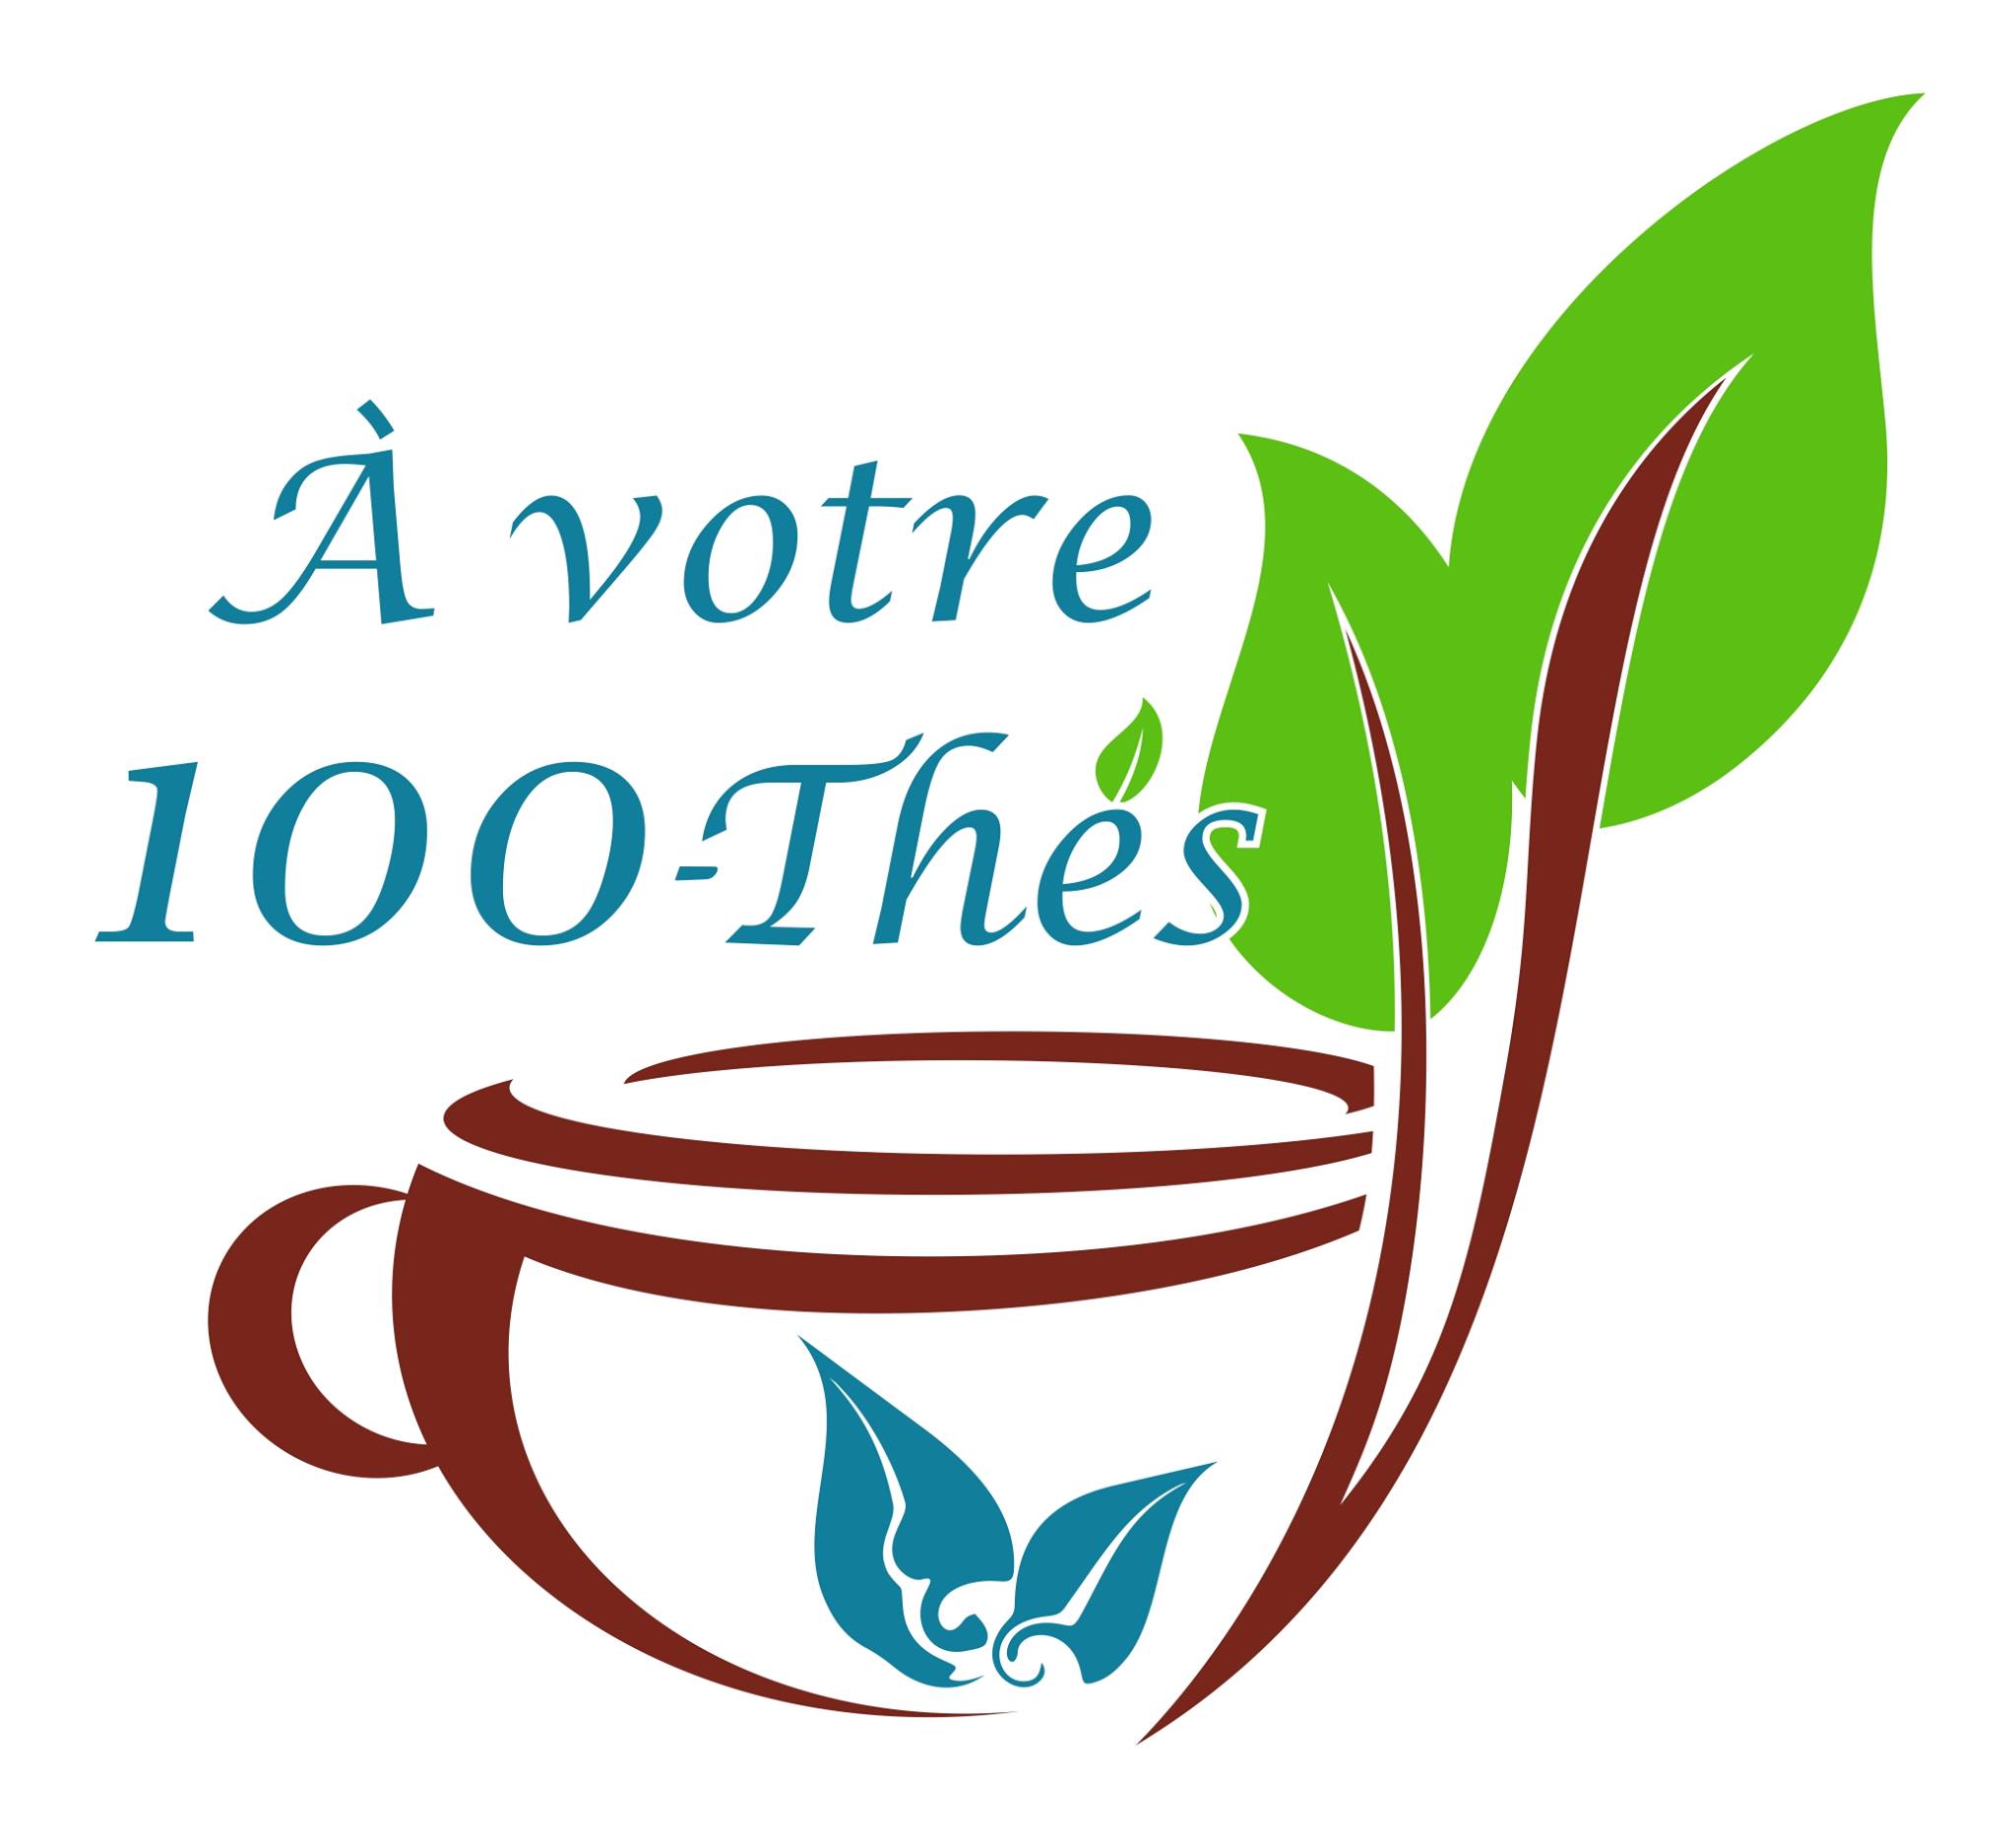 À votre 100 thés